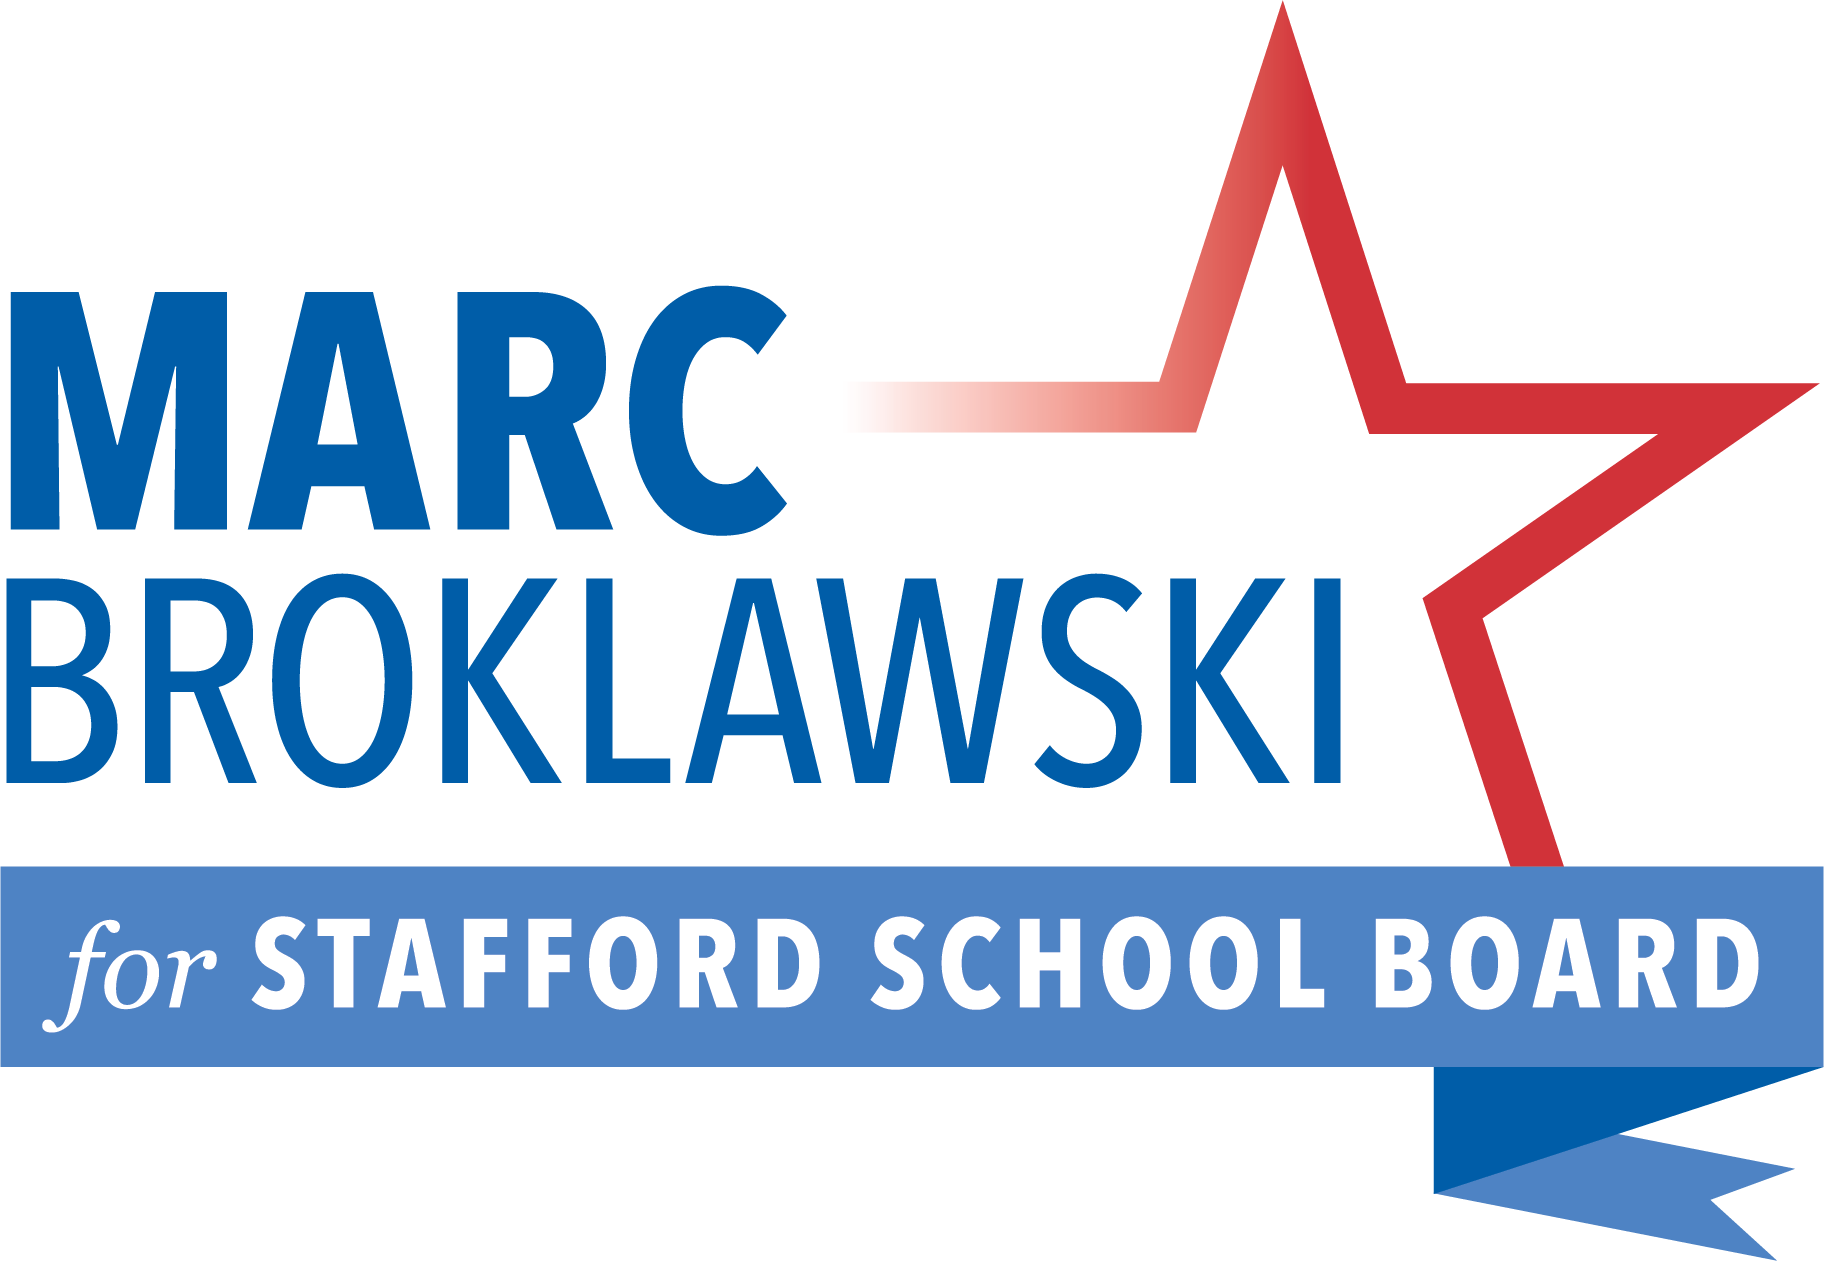 Marc for Stafford School Board